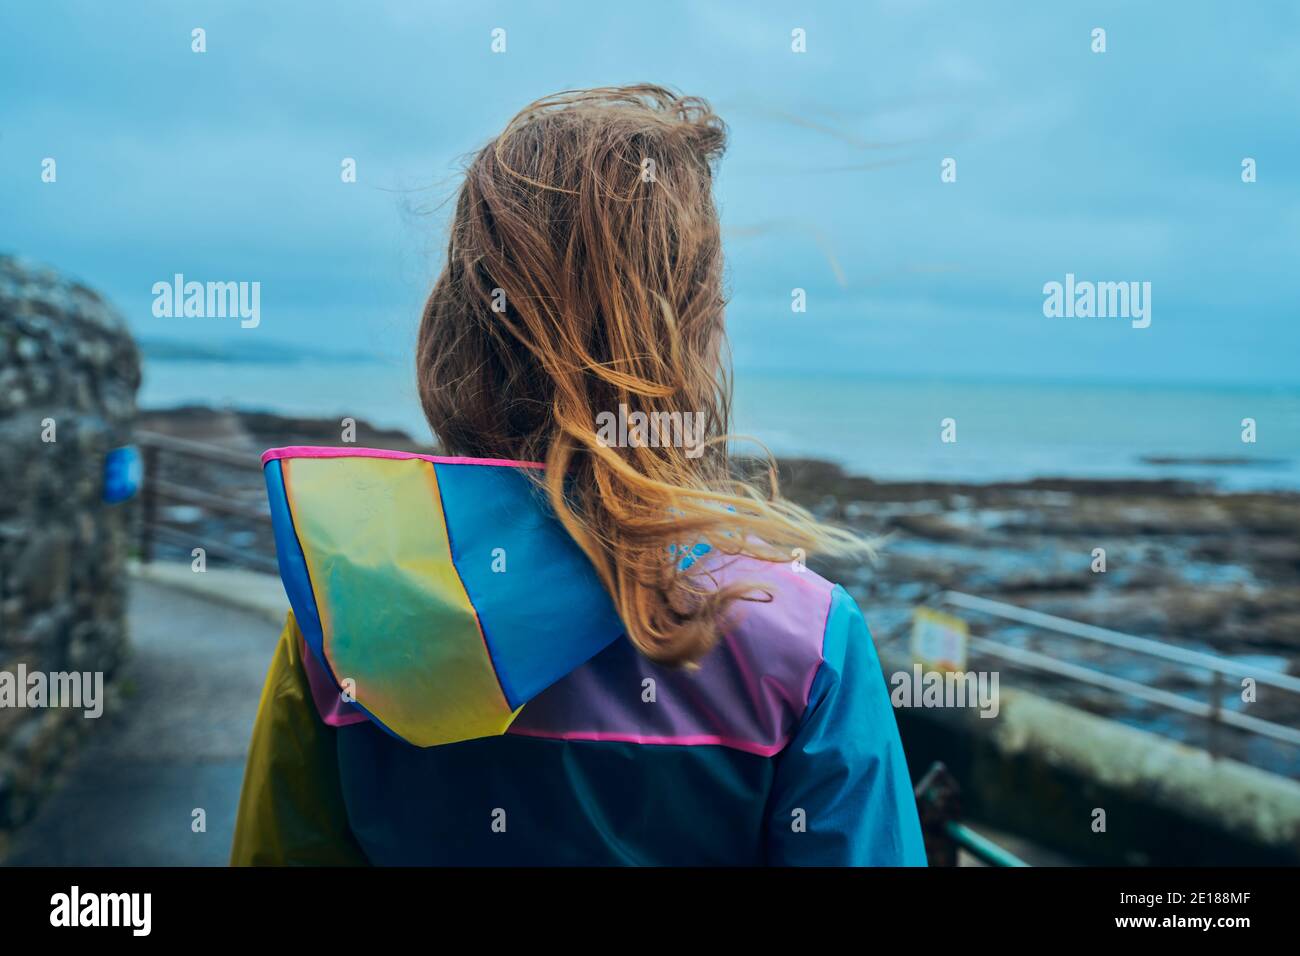 Eine junge Frau, die einen Regenmantel trägt, steht neben dem Am Meer Stockfoto